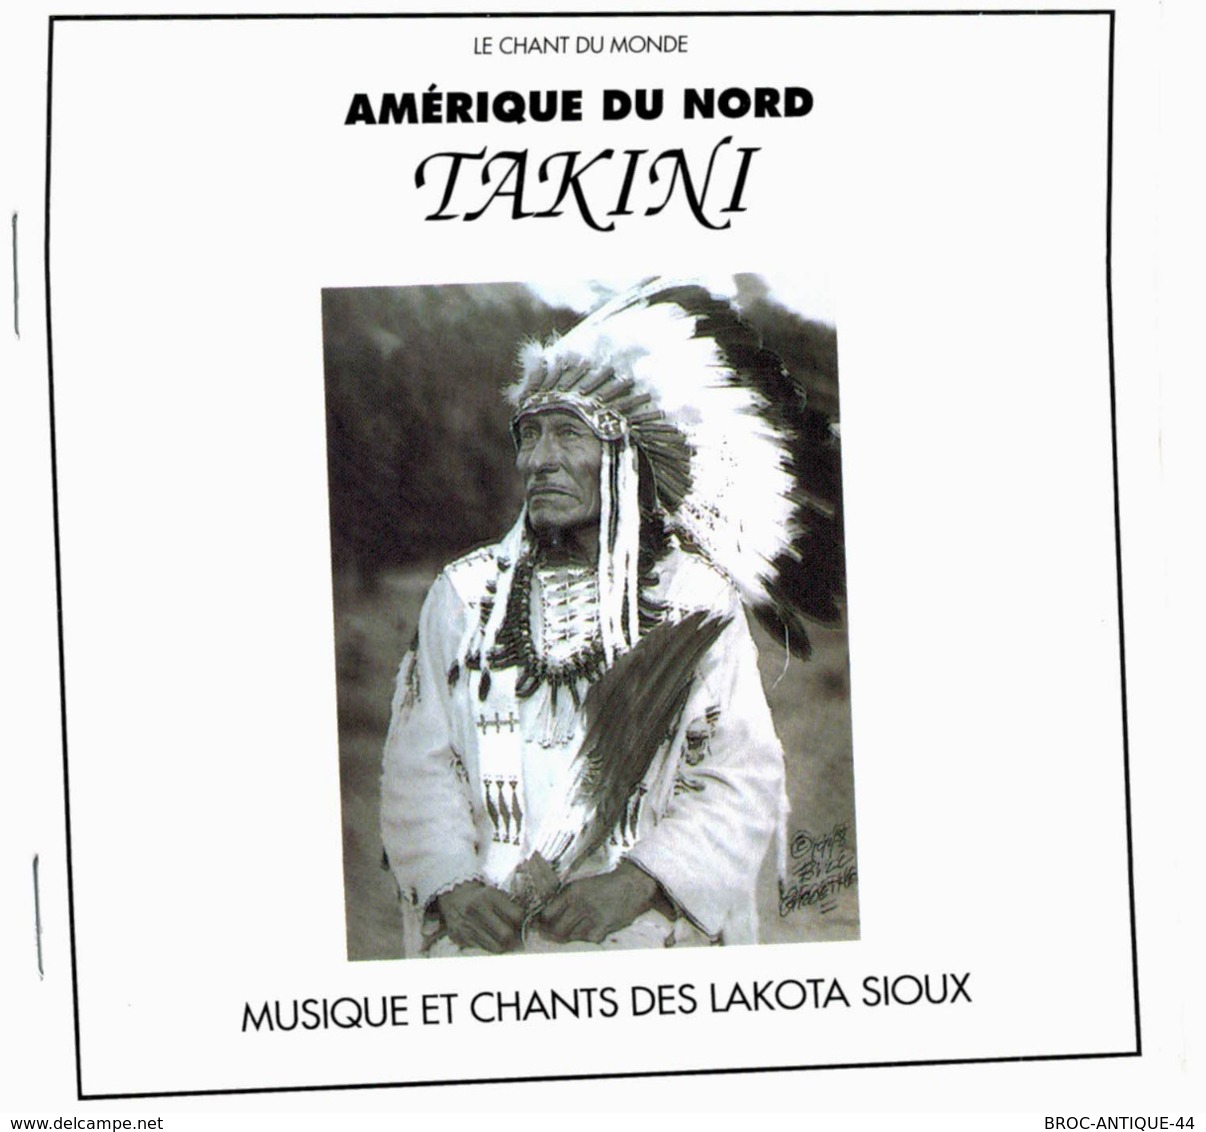 CD N°2557 - AMERIQUE DU NORD - TAKINI - MUSIQUE ET CHANTS DES LAKOTA SIOUX -  COMPILATION 10 TITRES - World Music